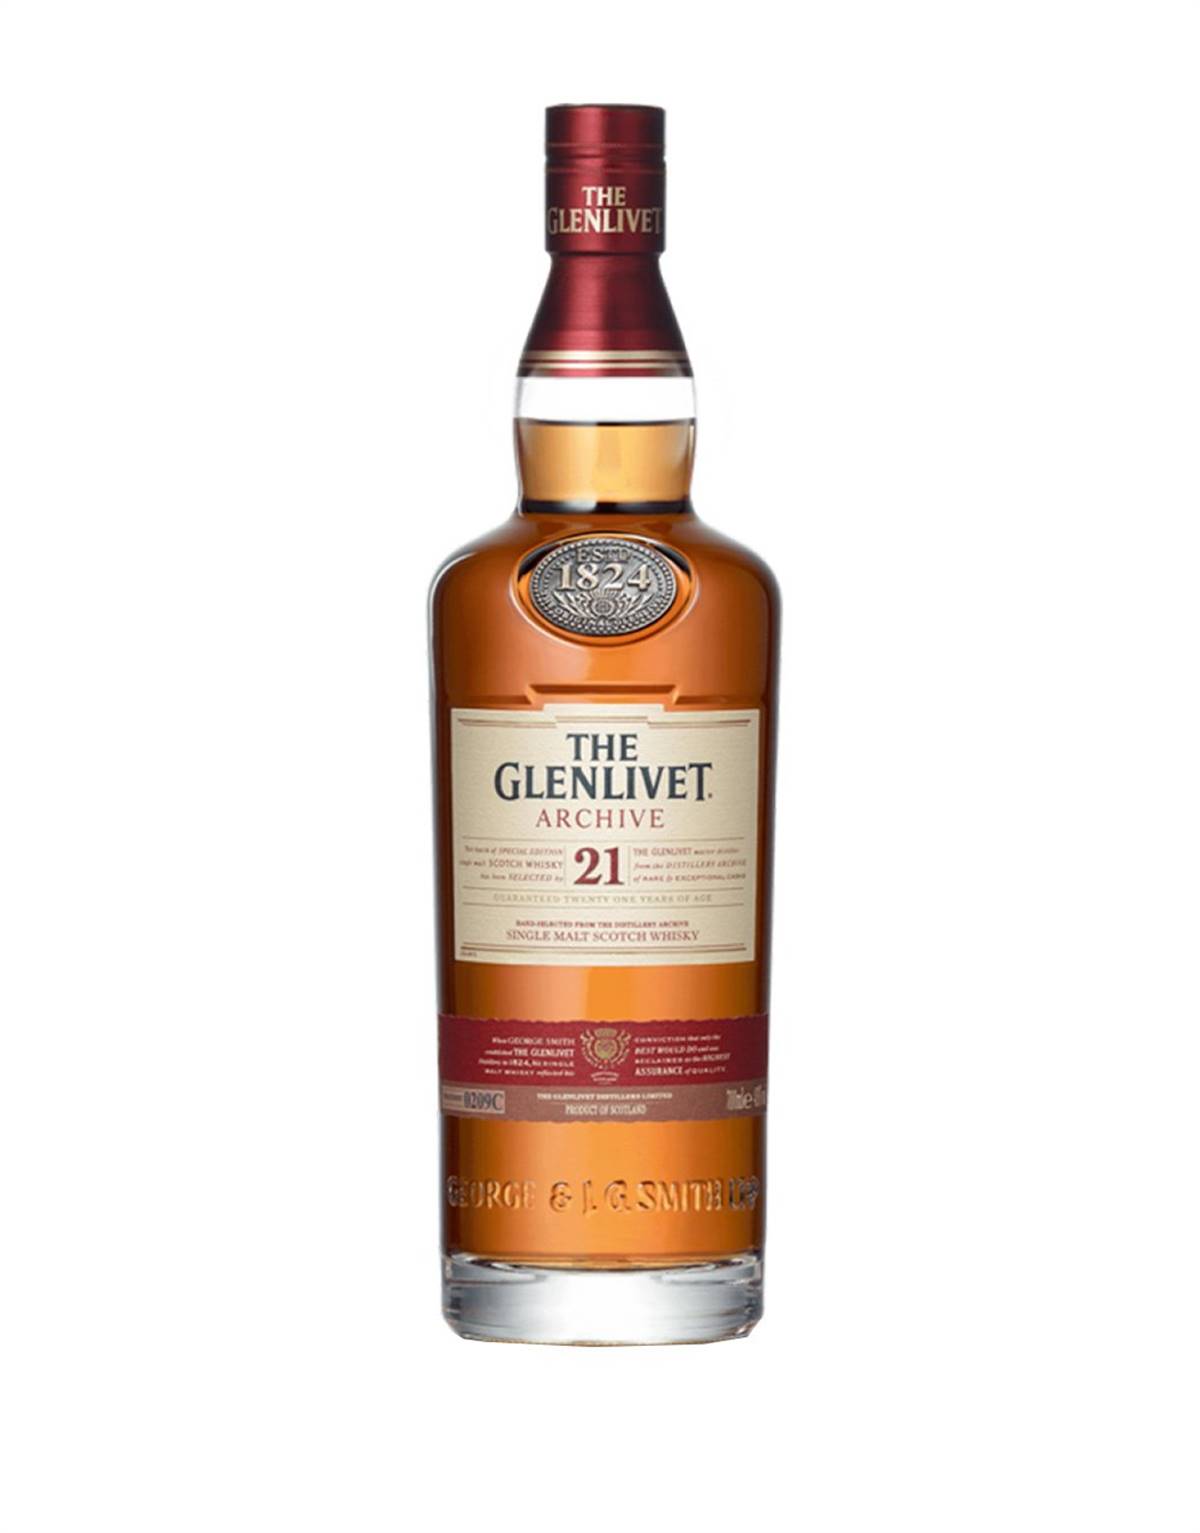 The Glenlivet 21